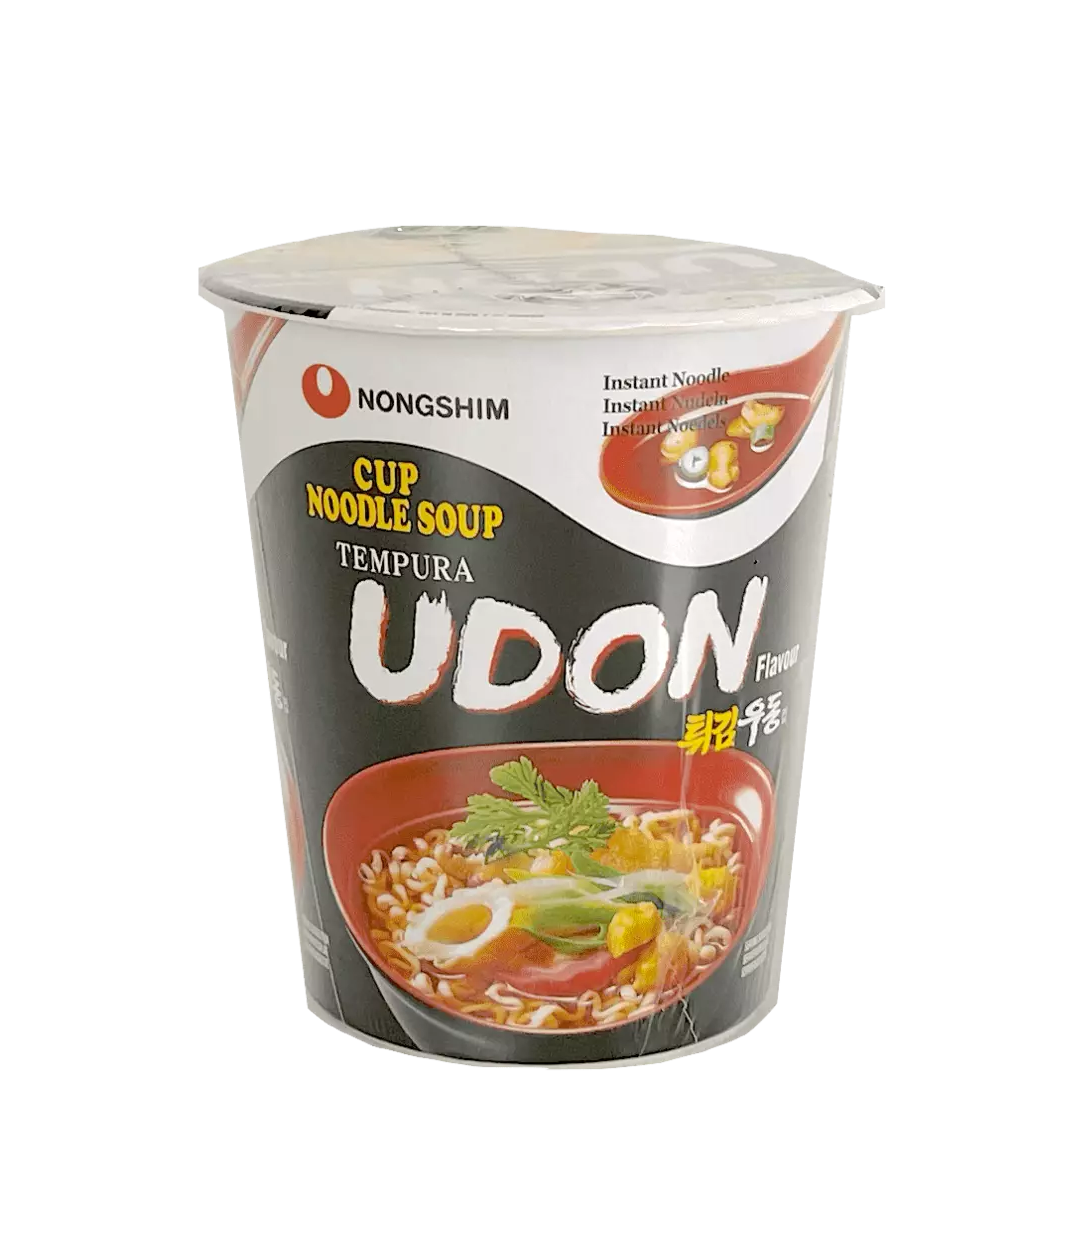 Instant Noodles Cup Udon 62g Nongshim Korea